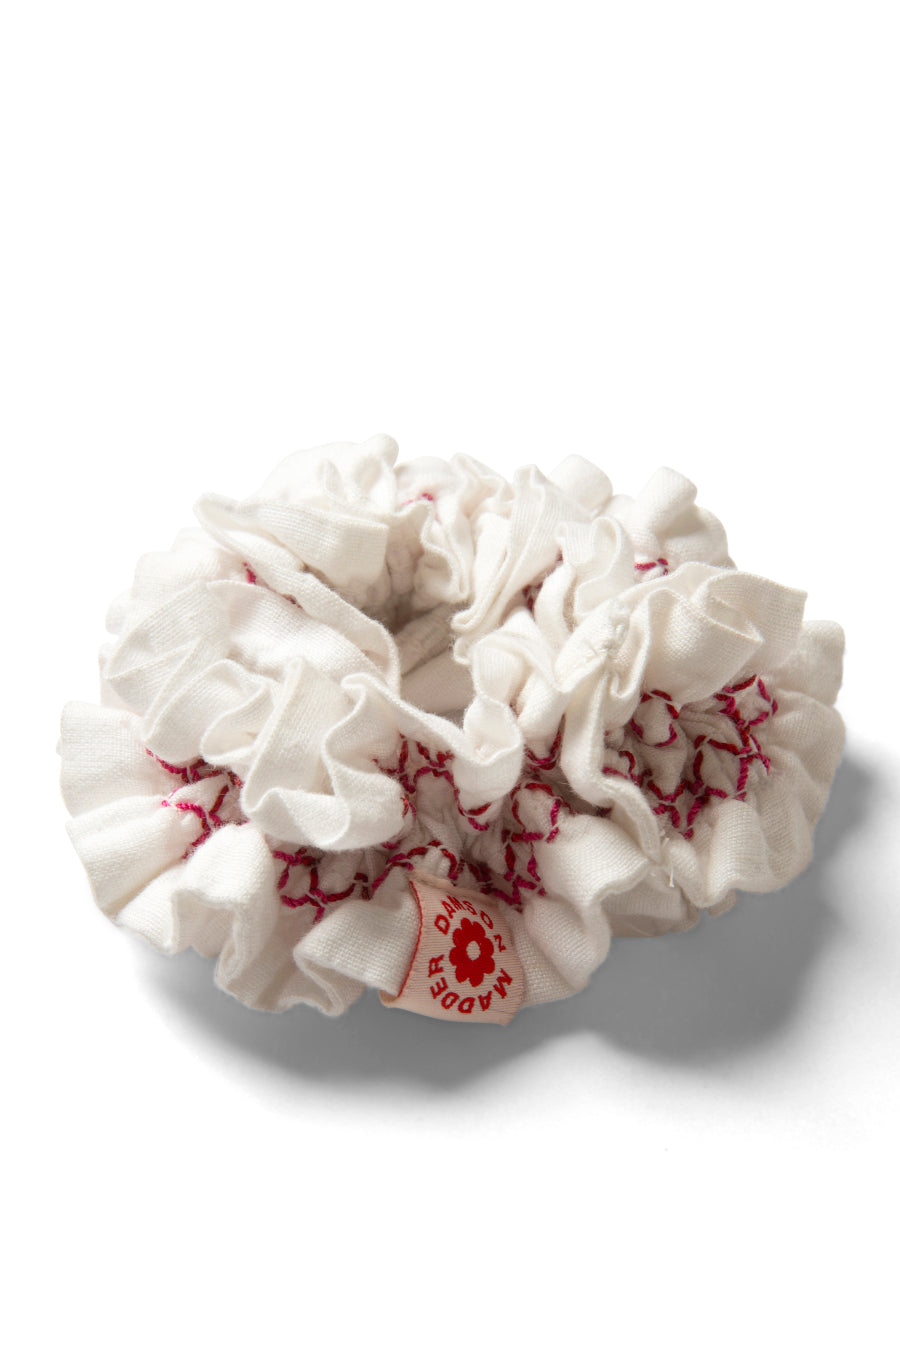 garter scrunchie in white with red stitch detail